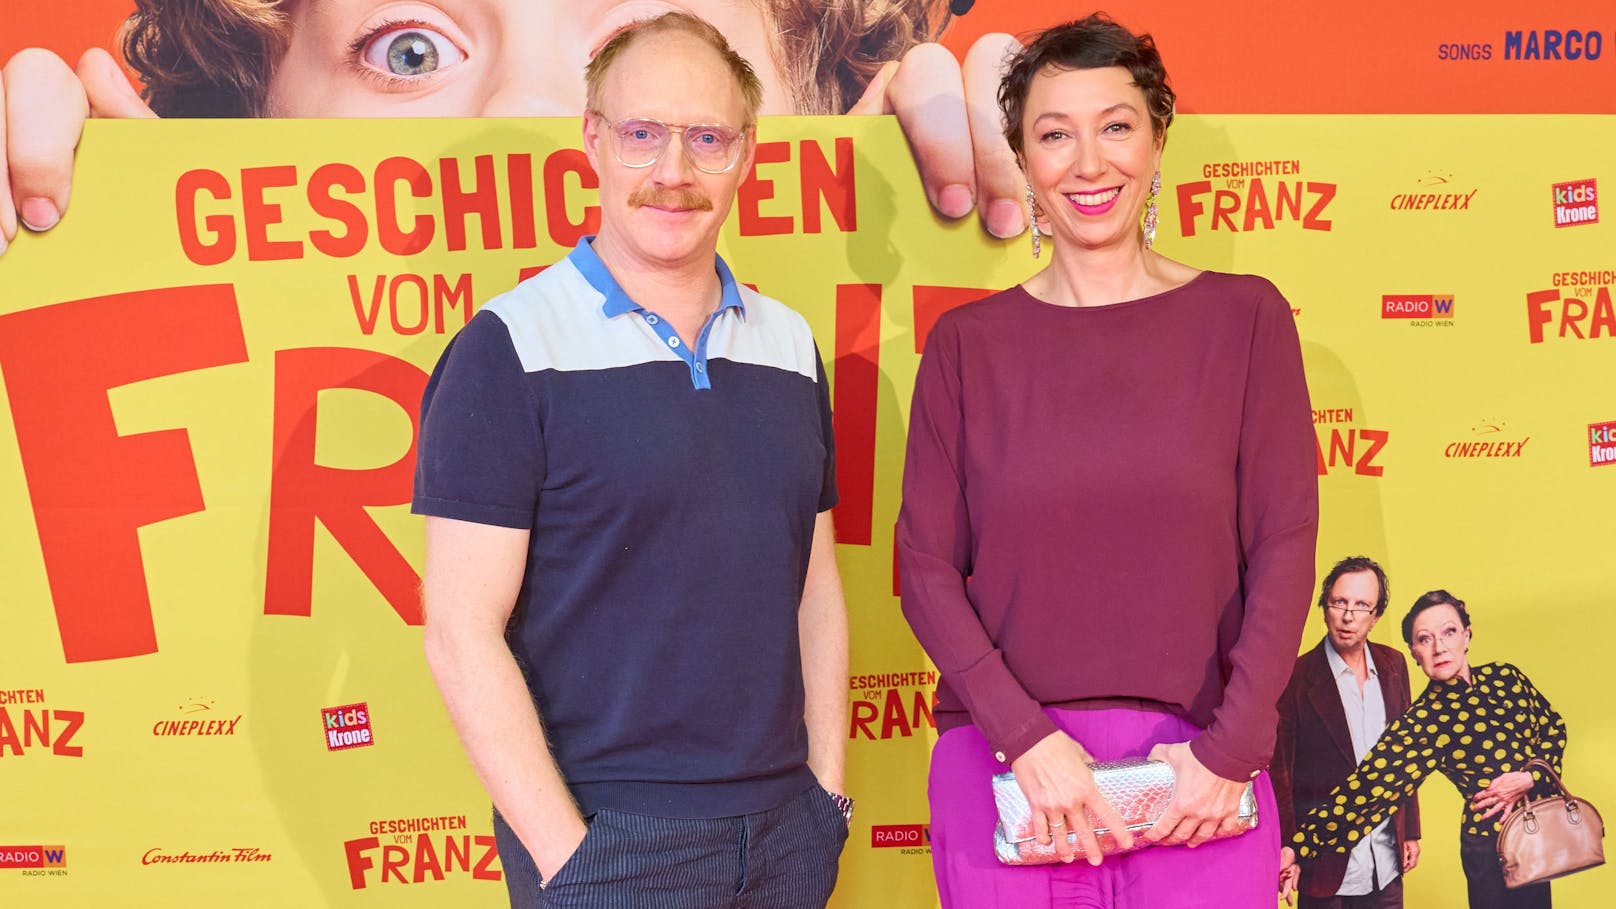 Simon Schwarz und Ursula Strauss bei der Premiere von "Geschichten vom Franz"